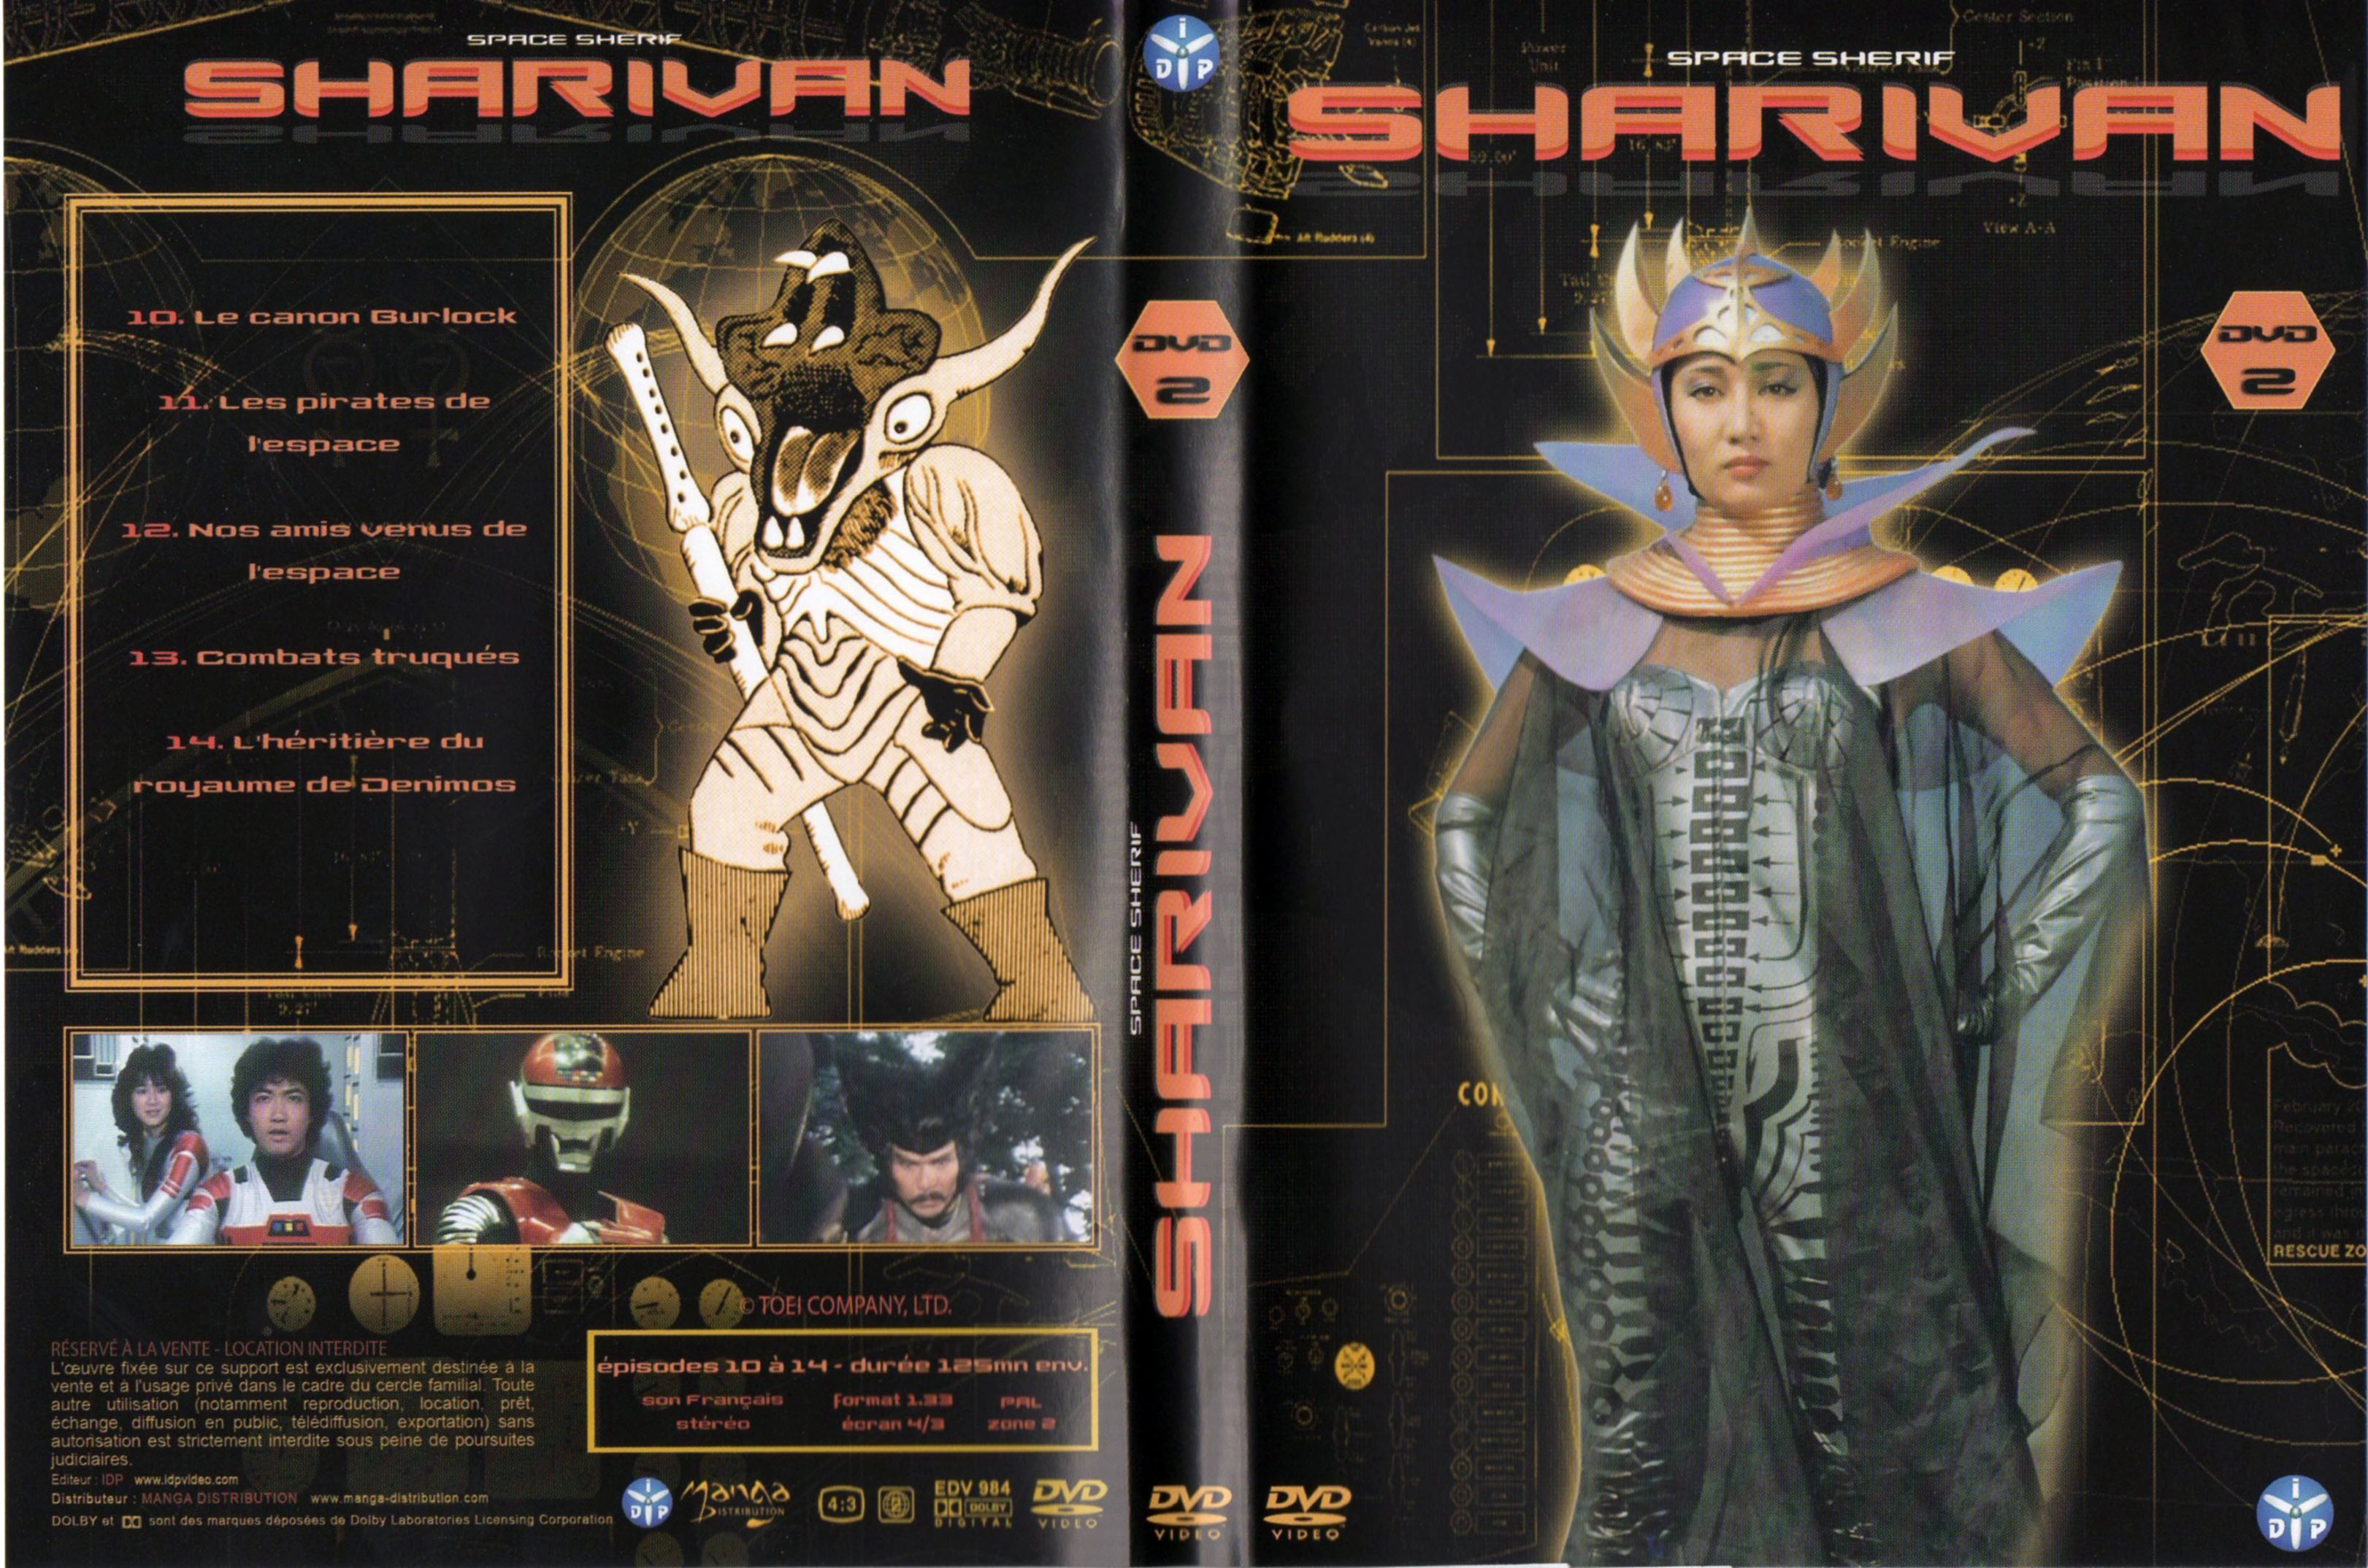 Jaquette DVD Sharivan DVD 02